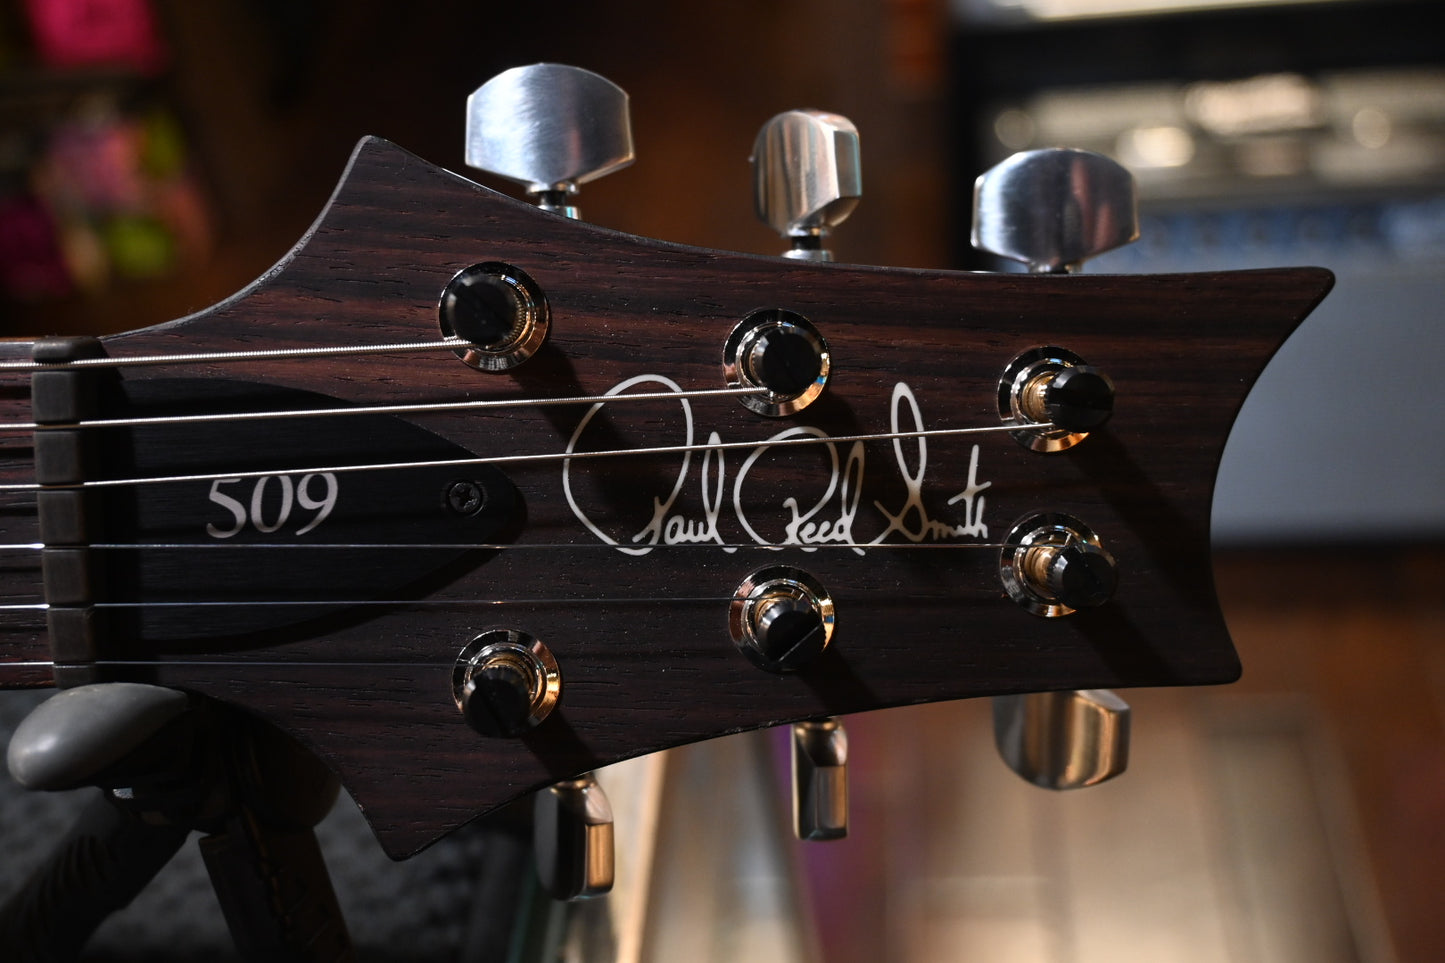 PRS 509 - Charcoal Tri Color Burst Guitar #7164 - Danville Music